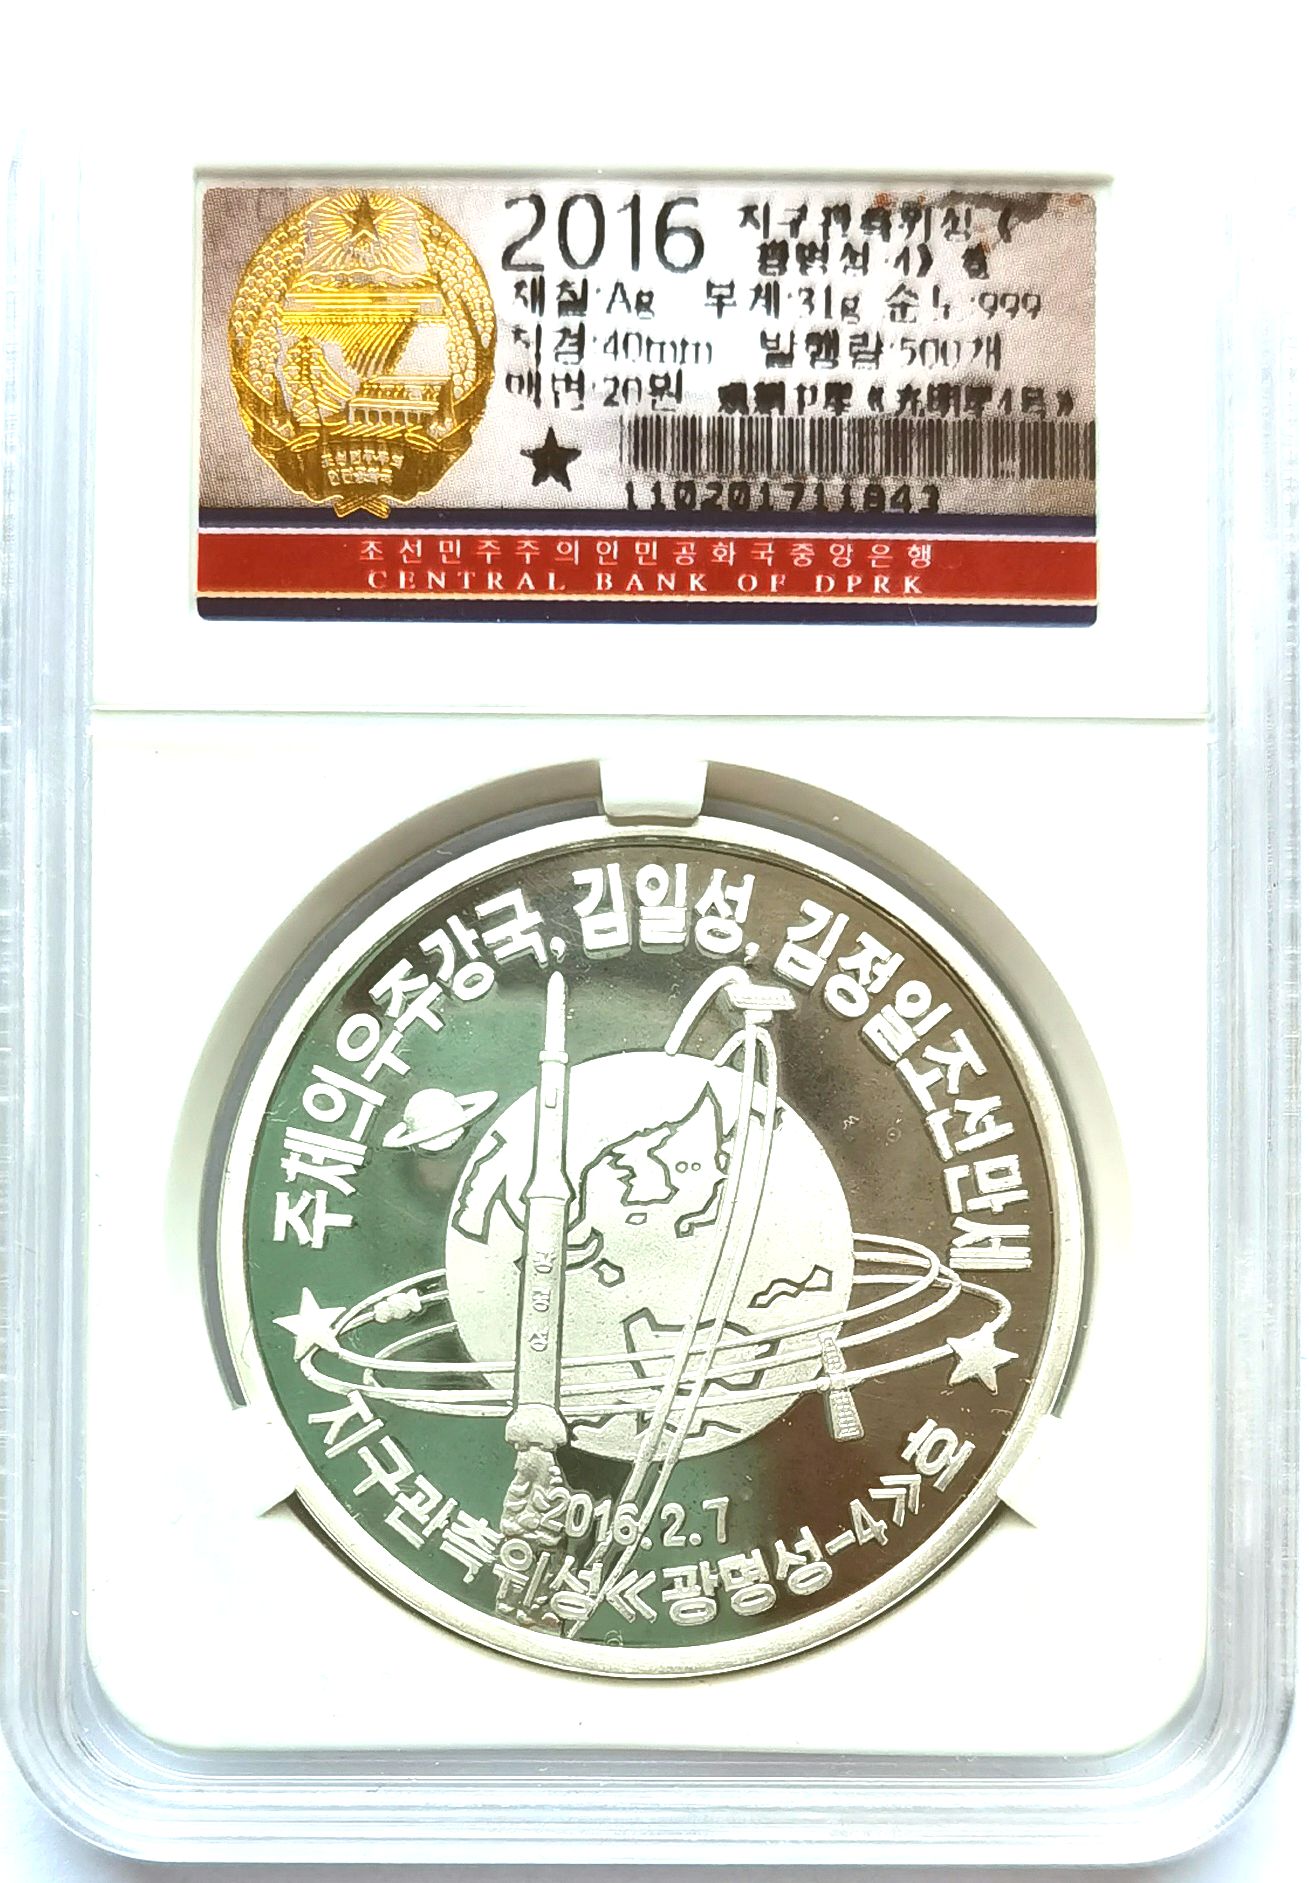 L3456, Korea "Kwangmyongsong-4 Missile Rocket" Silver Coin 1 oz. 2016